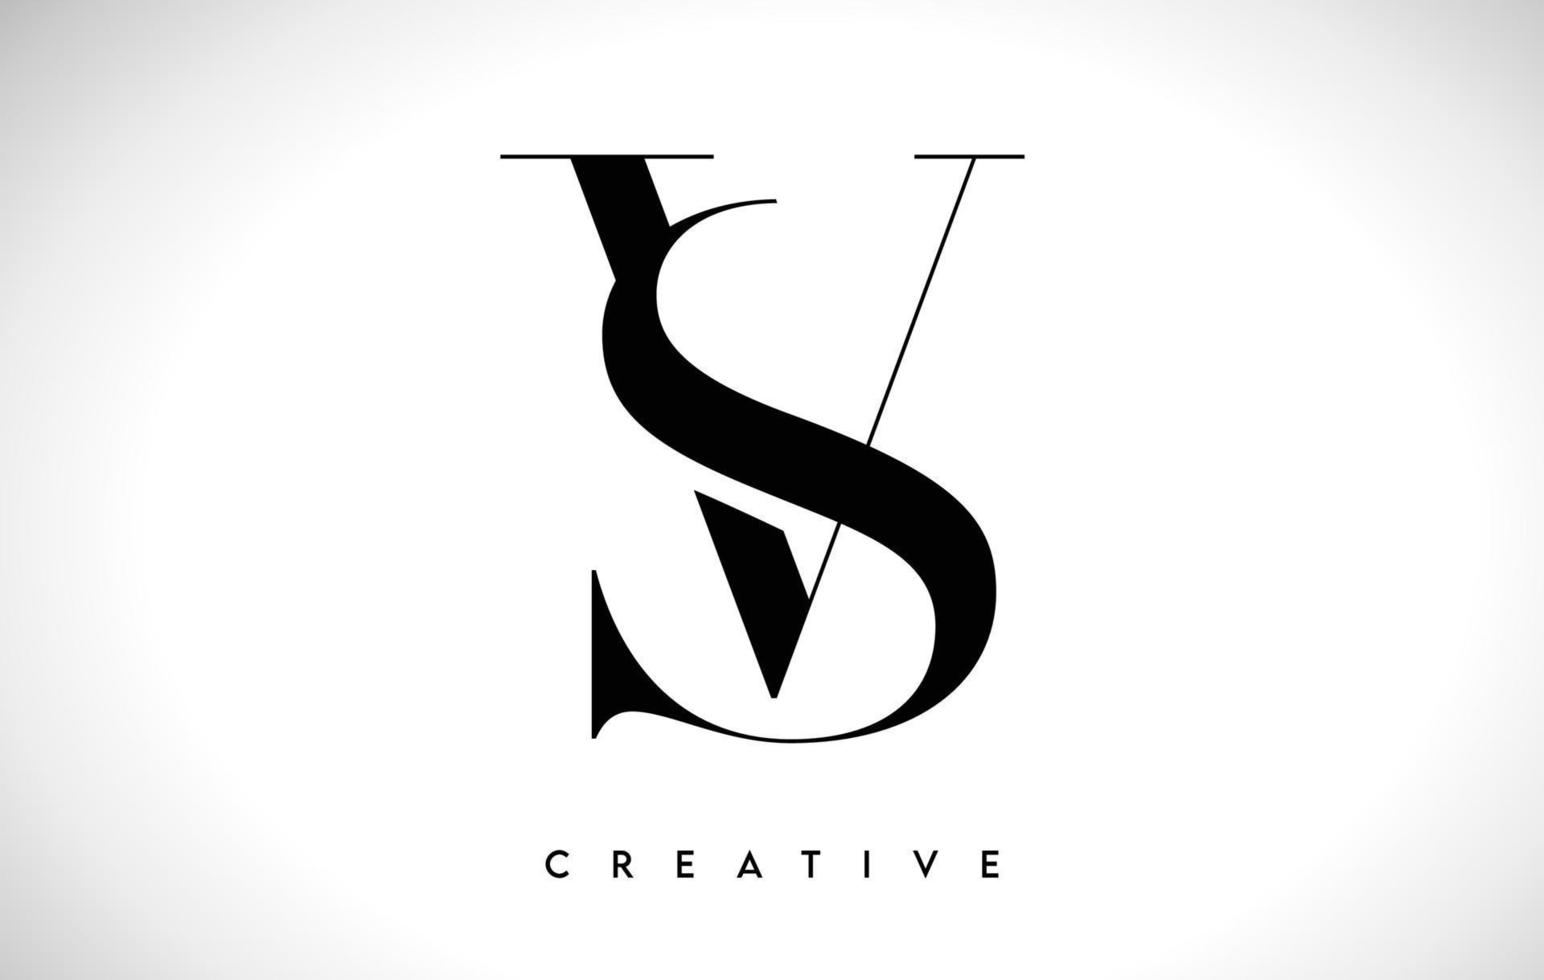 sv lettera artistica logo design con font serif in colori bianco e nero illustrazione vettoriale